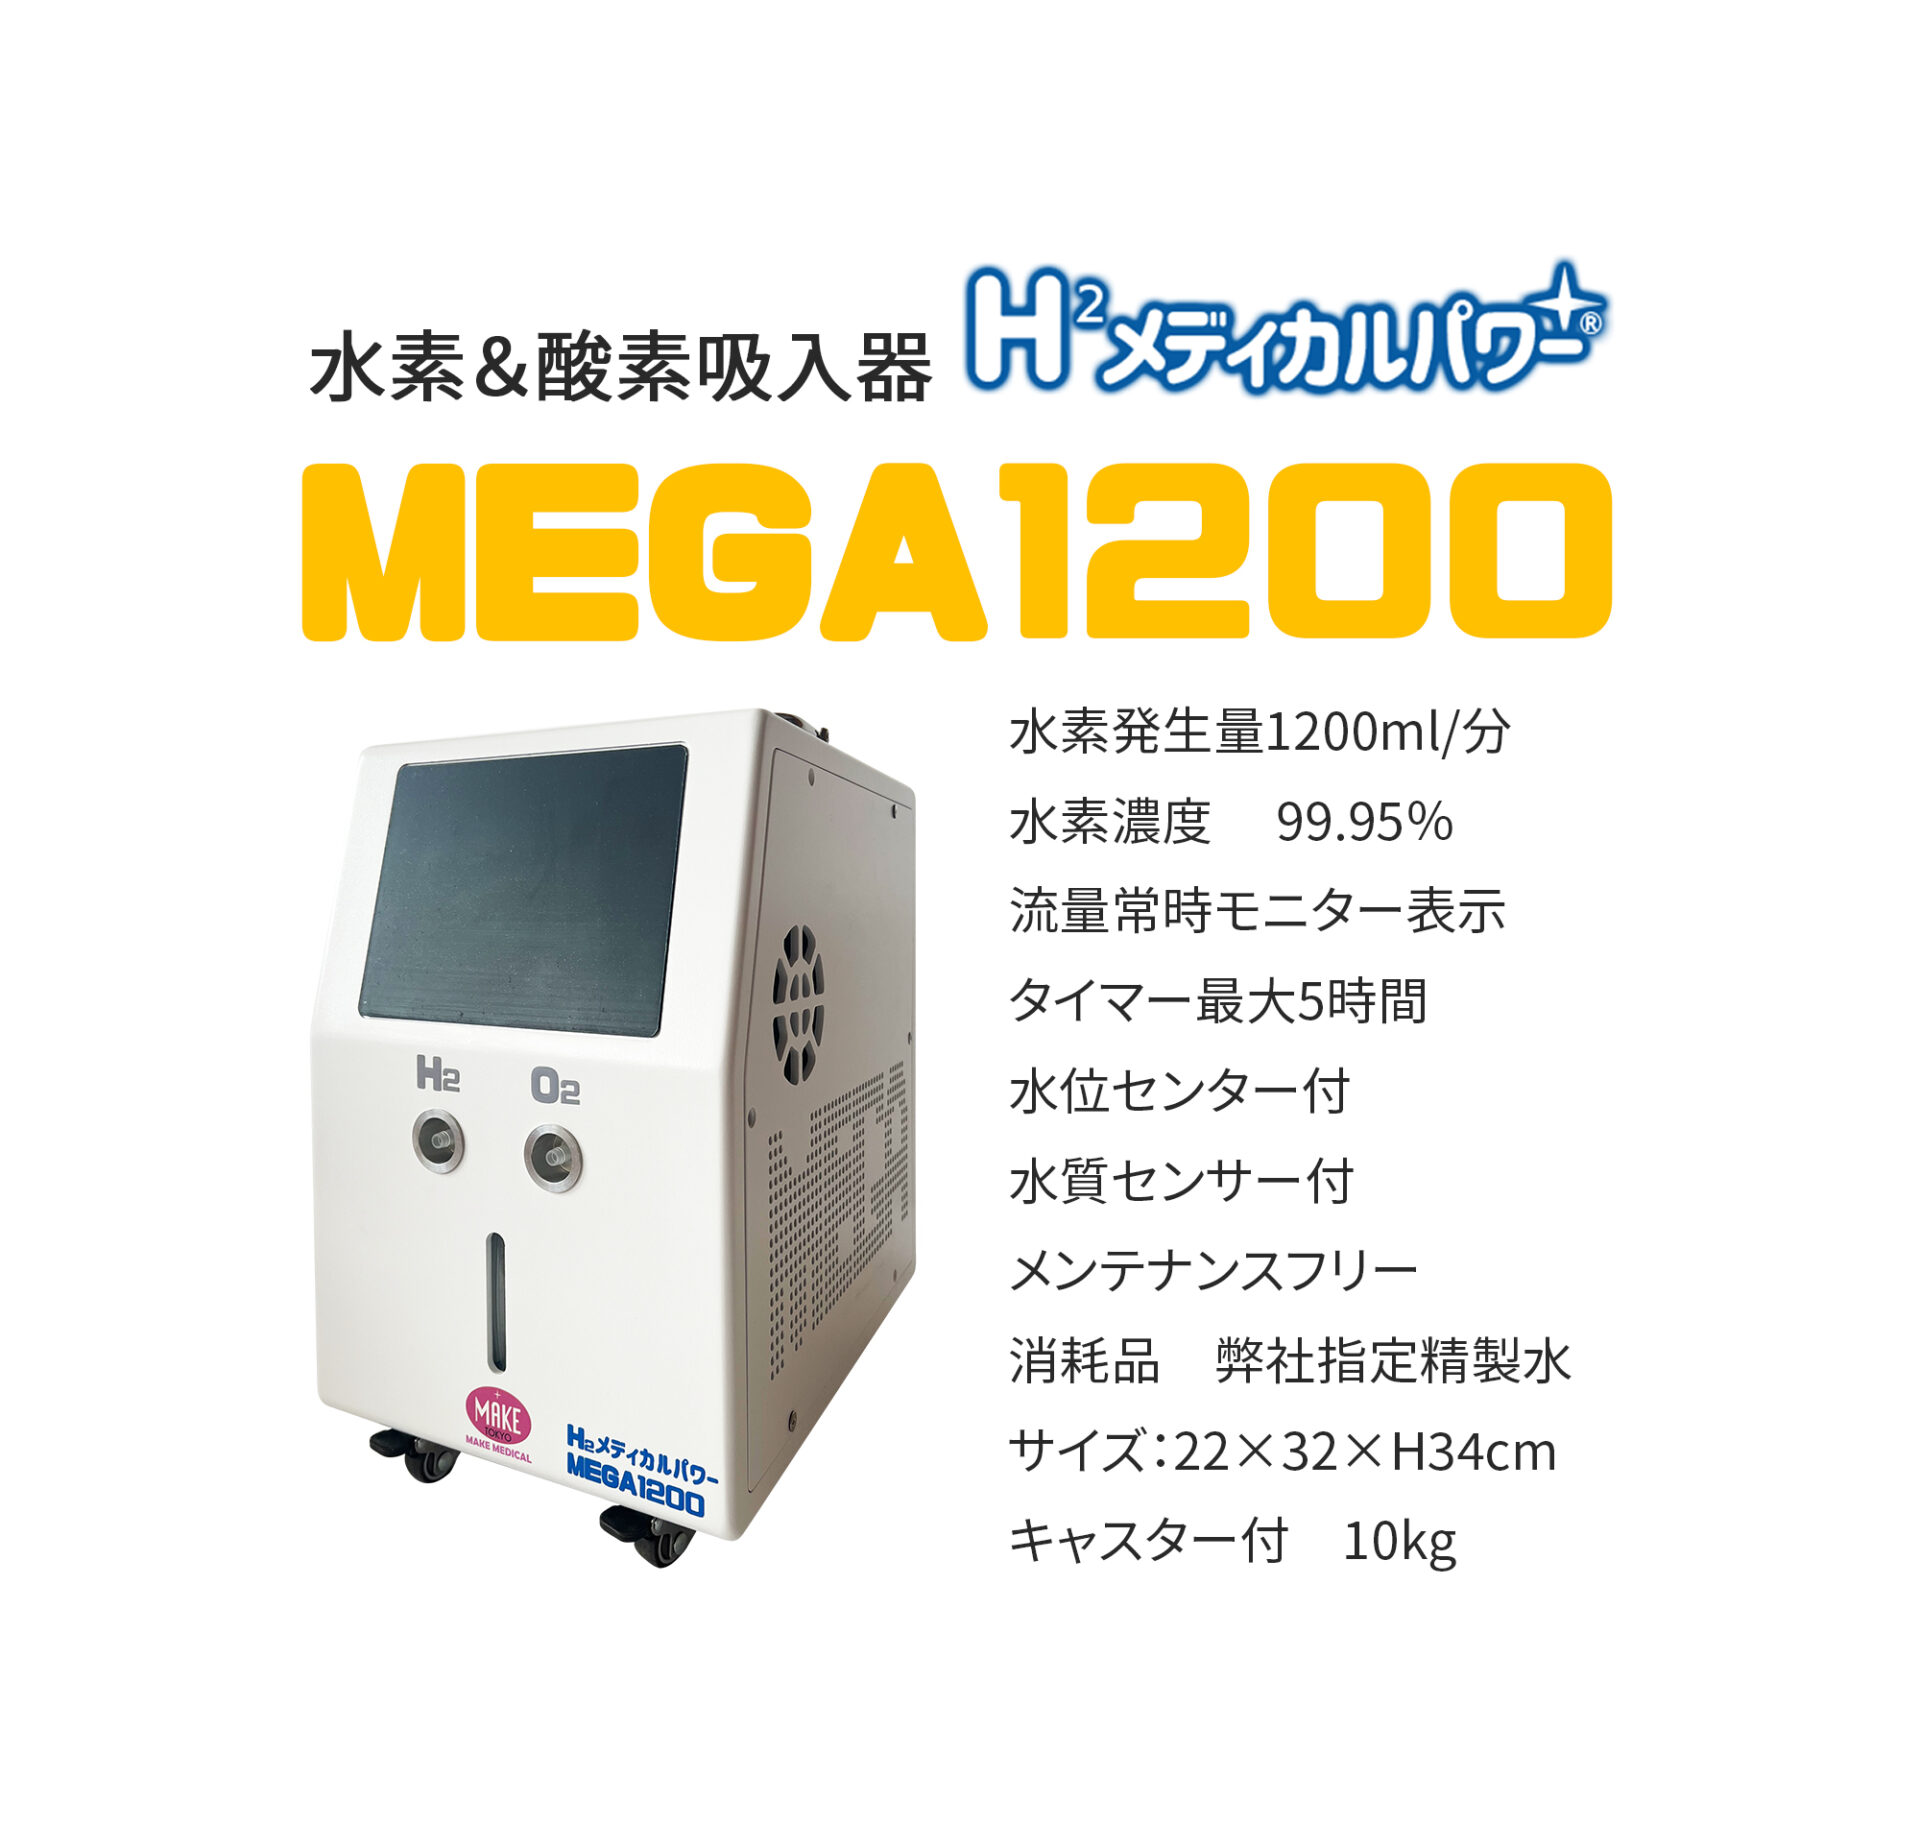 43,500円水素吸入器  H2メディカルパワー±  MK-600  MAKE MEDICAL